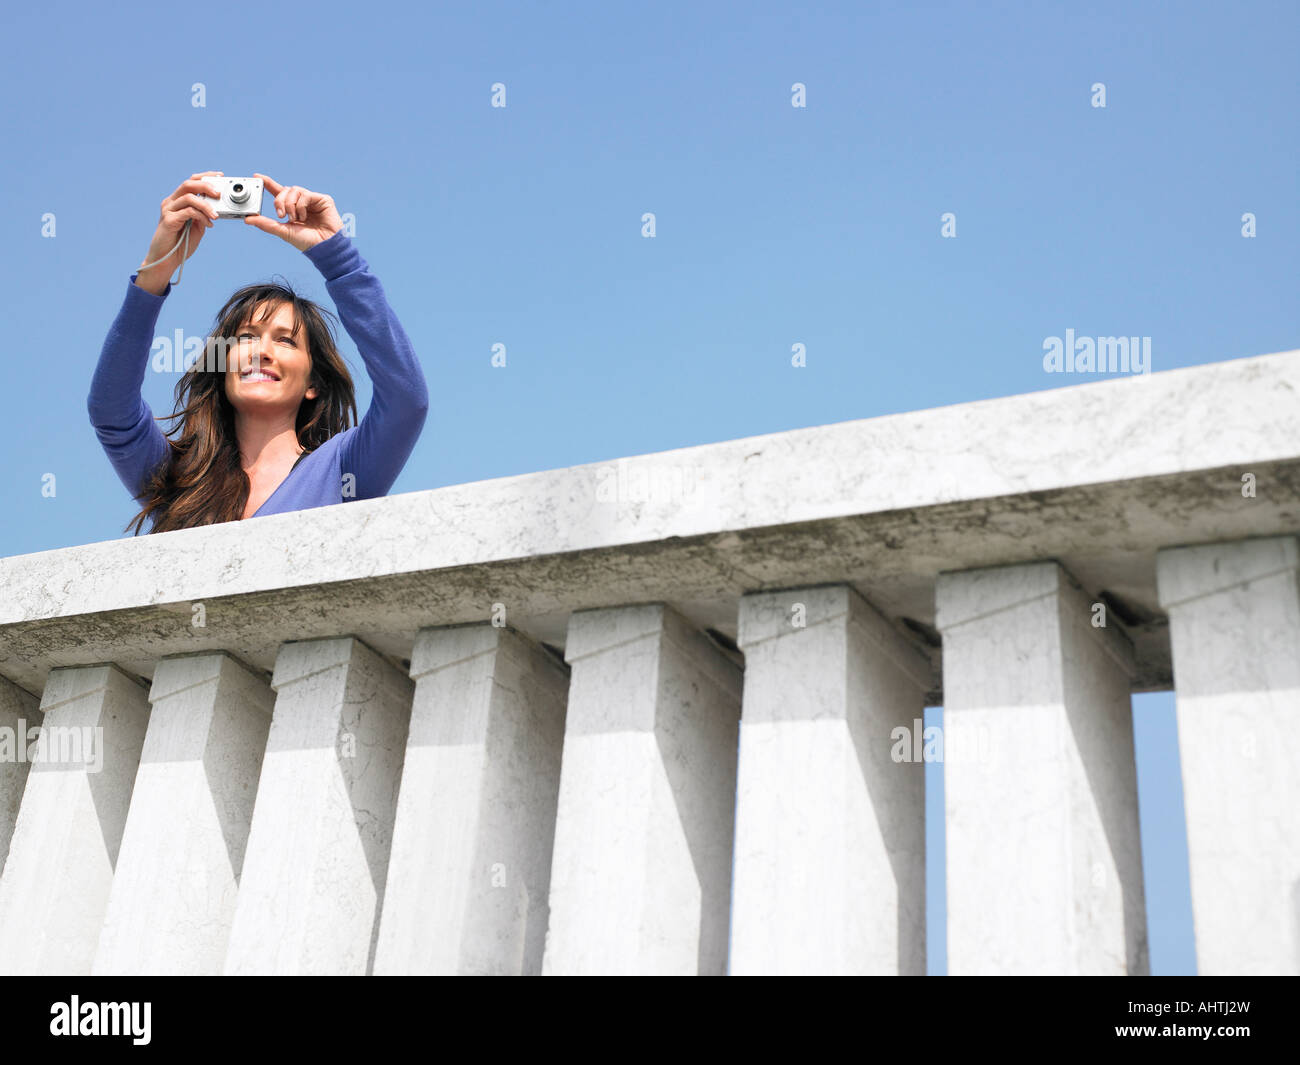 Donna sul balcone prendendo fotografie con una fotocamera digitale. Venezia, Italia. Foto Stock